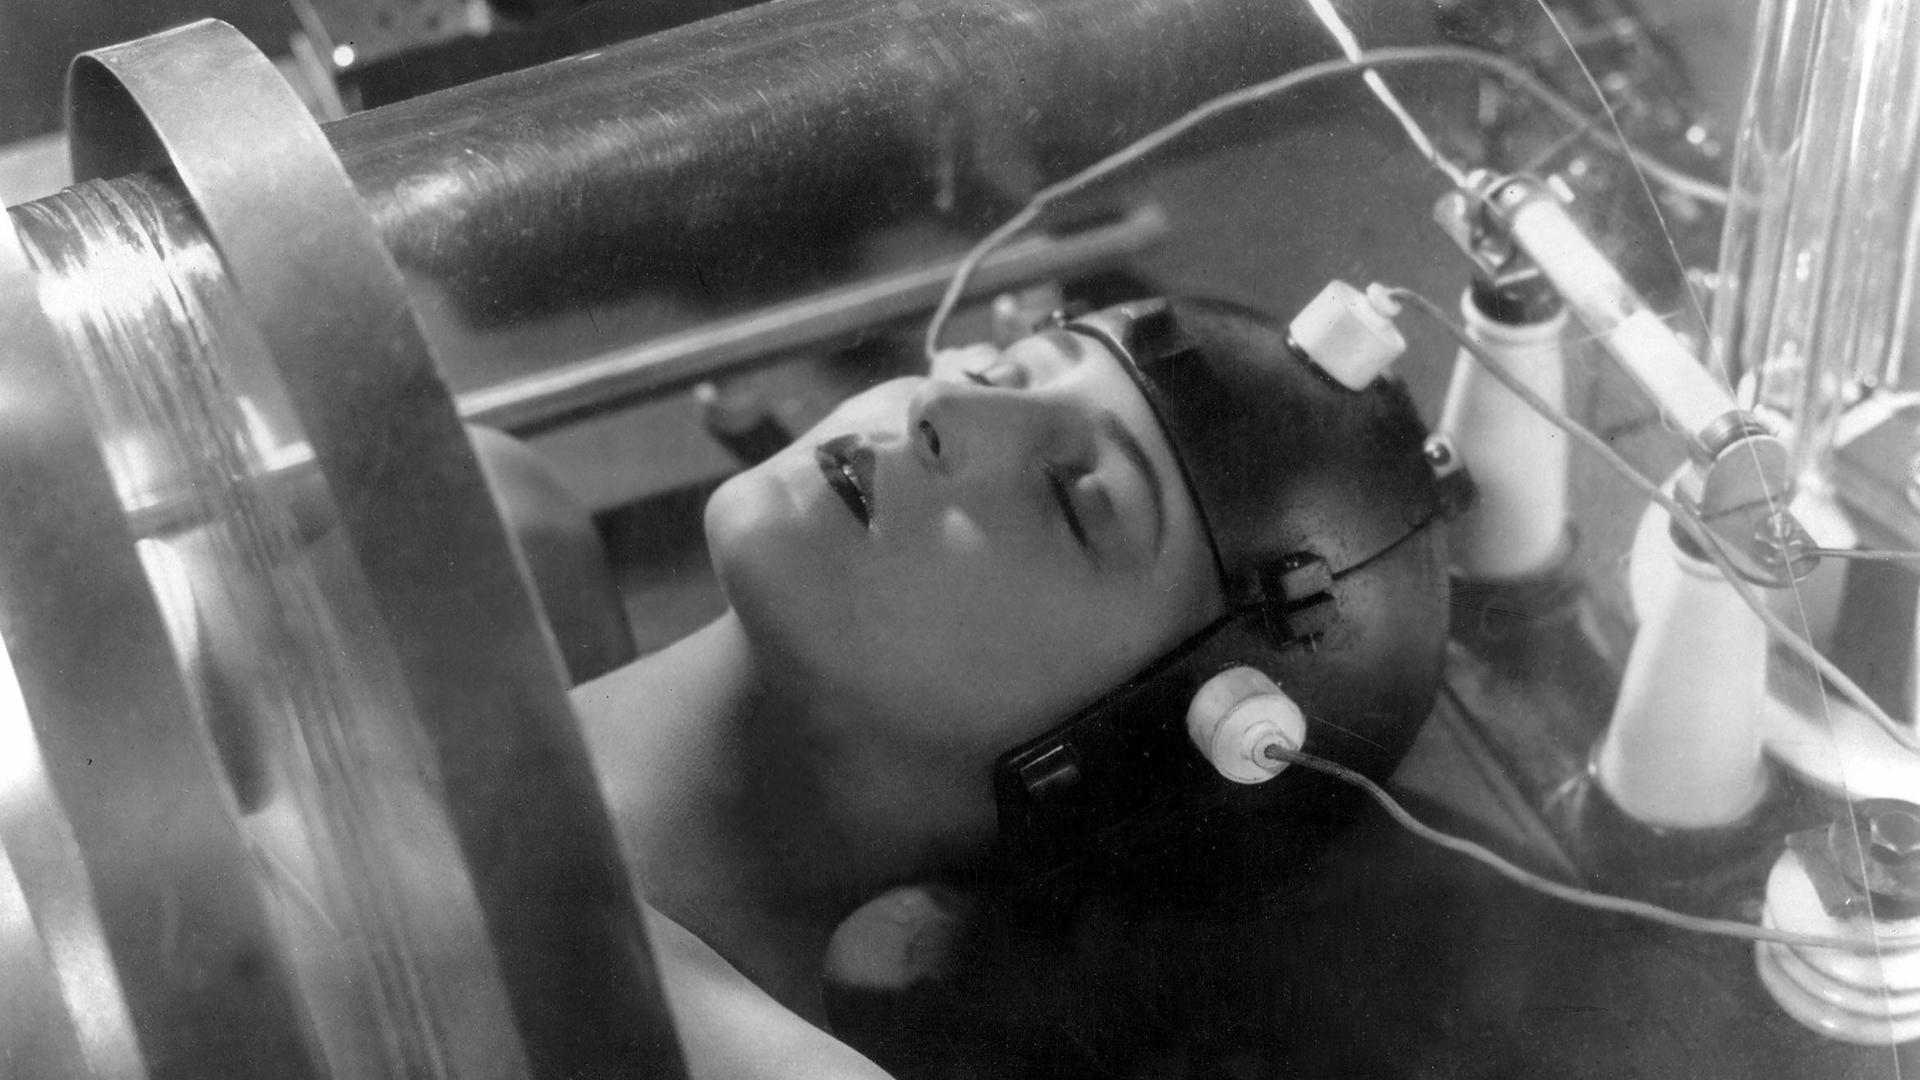 Brigitte Helm als Roboter im Film "Metropolis" aus dem Jahr 1927.